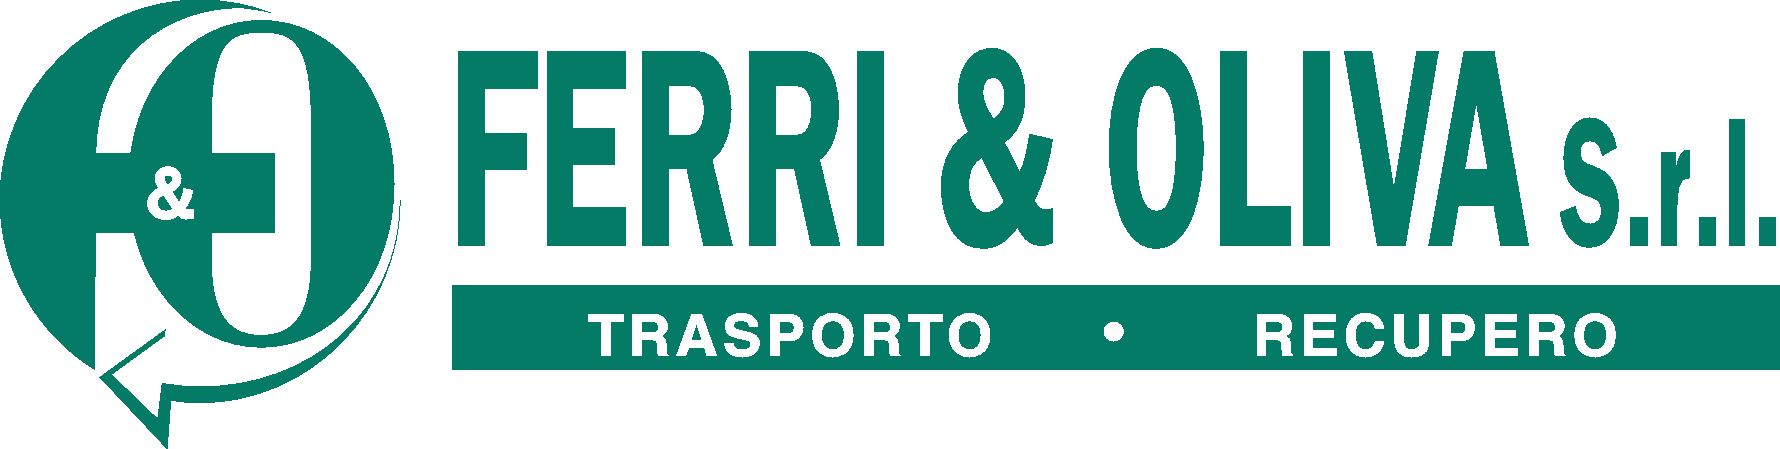 Ferri & Oliva s.r.l. - Calcinelli di Saltara - Fano - Pesaro e Urbino